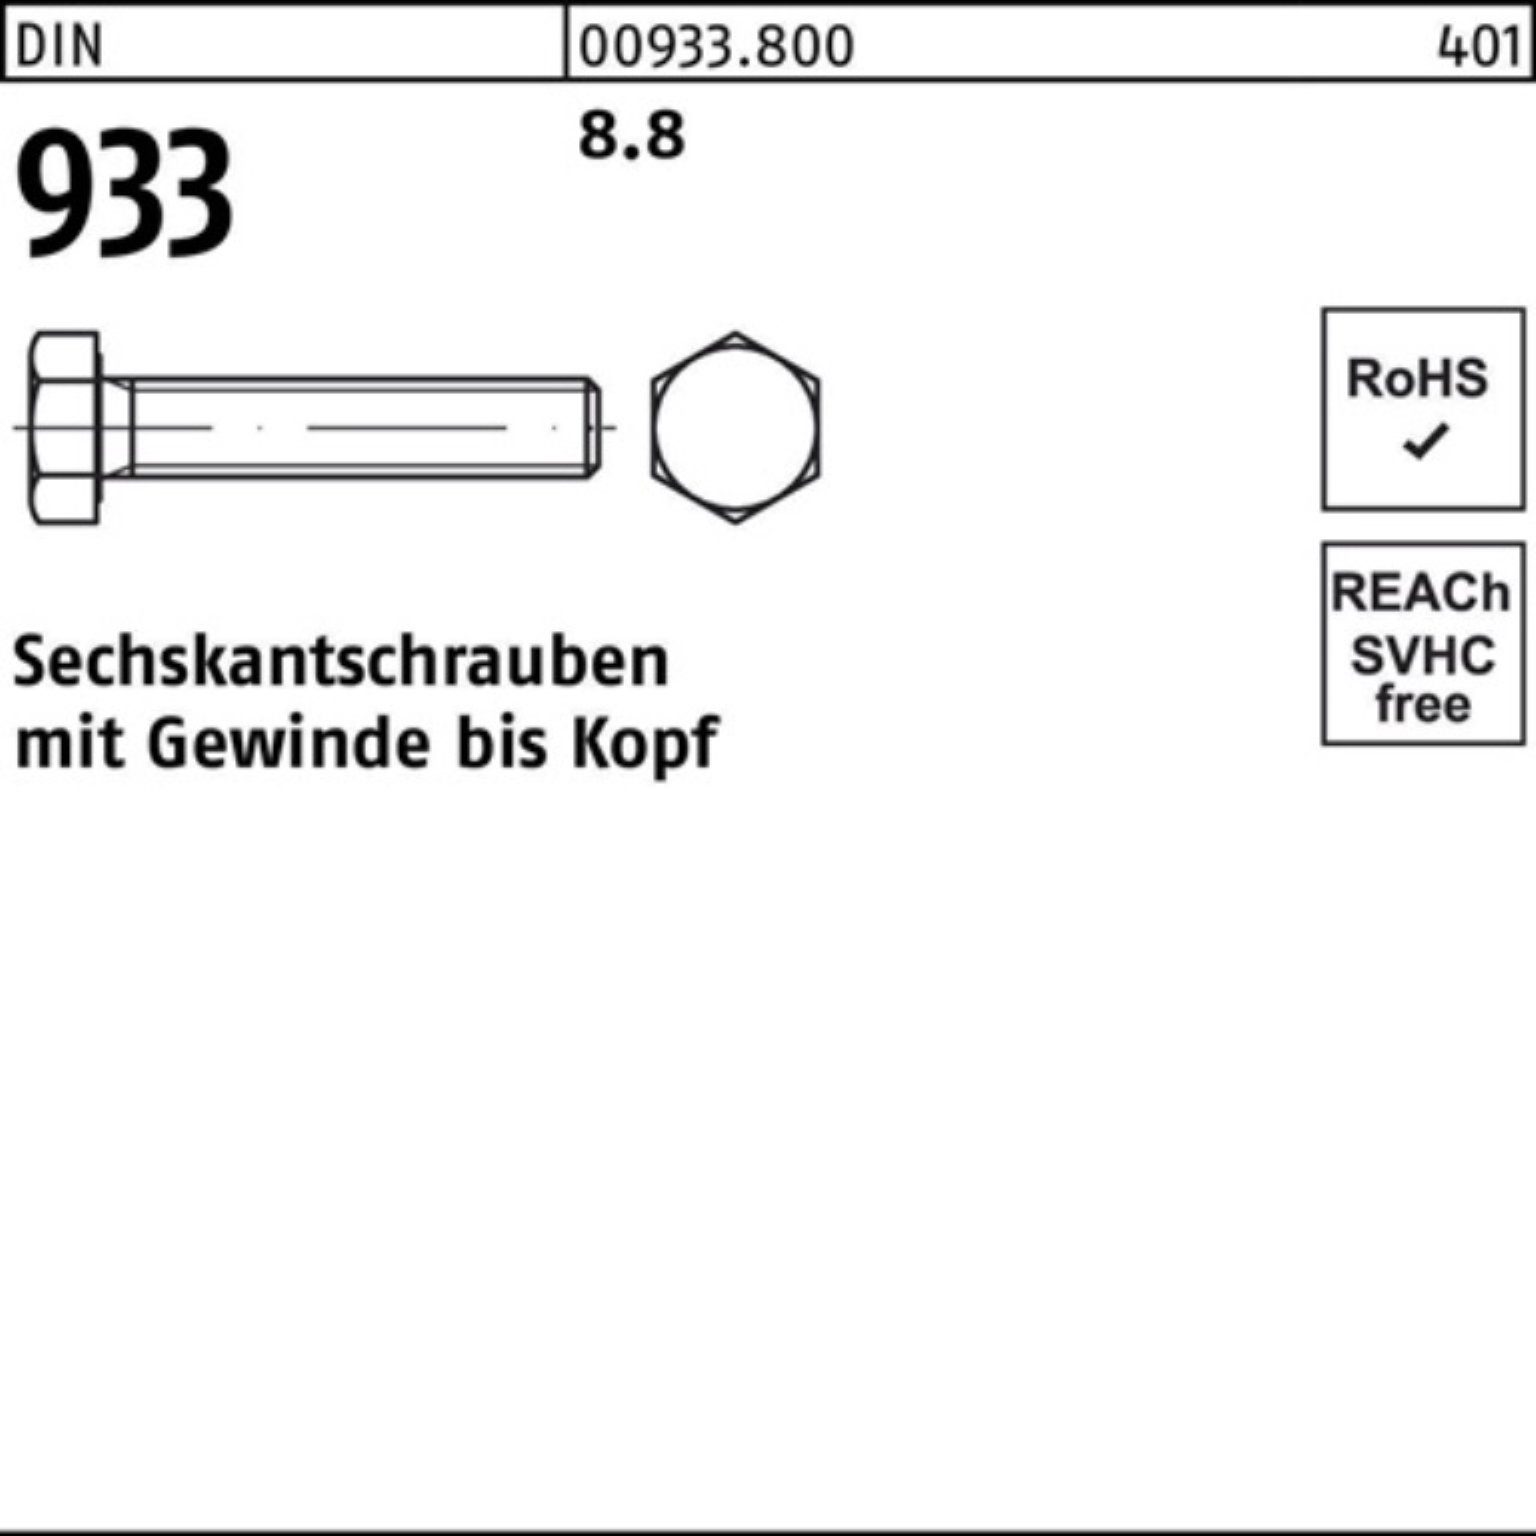 VG 100er Sechskantschraube 1 80 8 933 933 Sechskantschraube Reyher 8.8 DIN Stück M48x Pack DIN